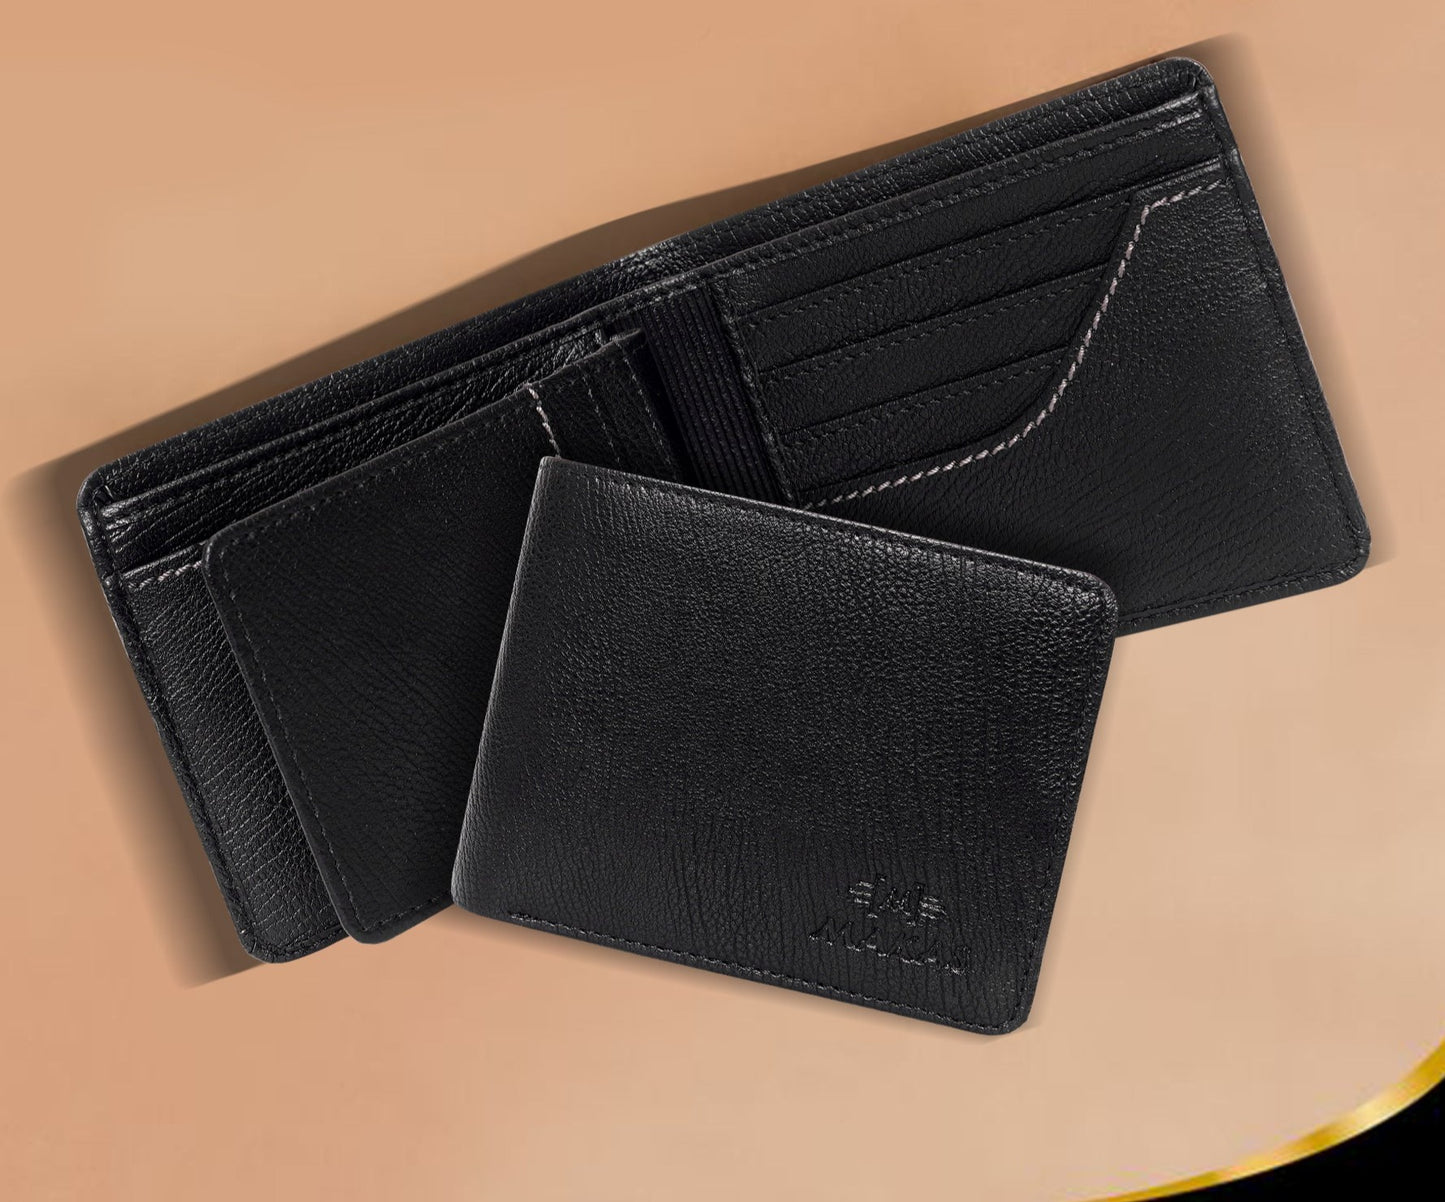 Makas men's card holder wallet , internal view, color - Black